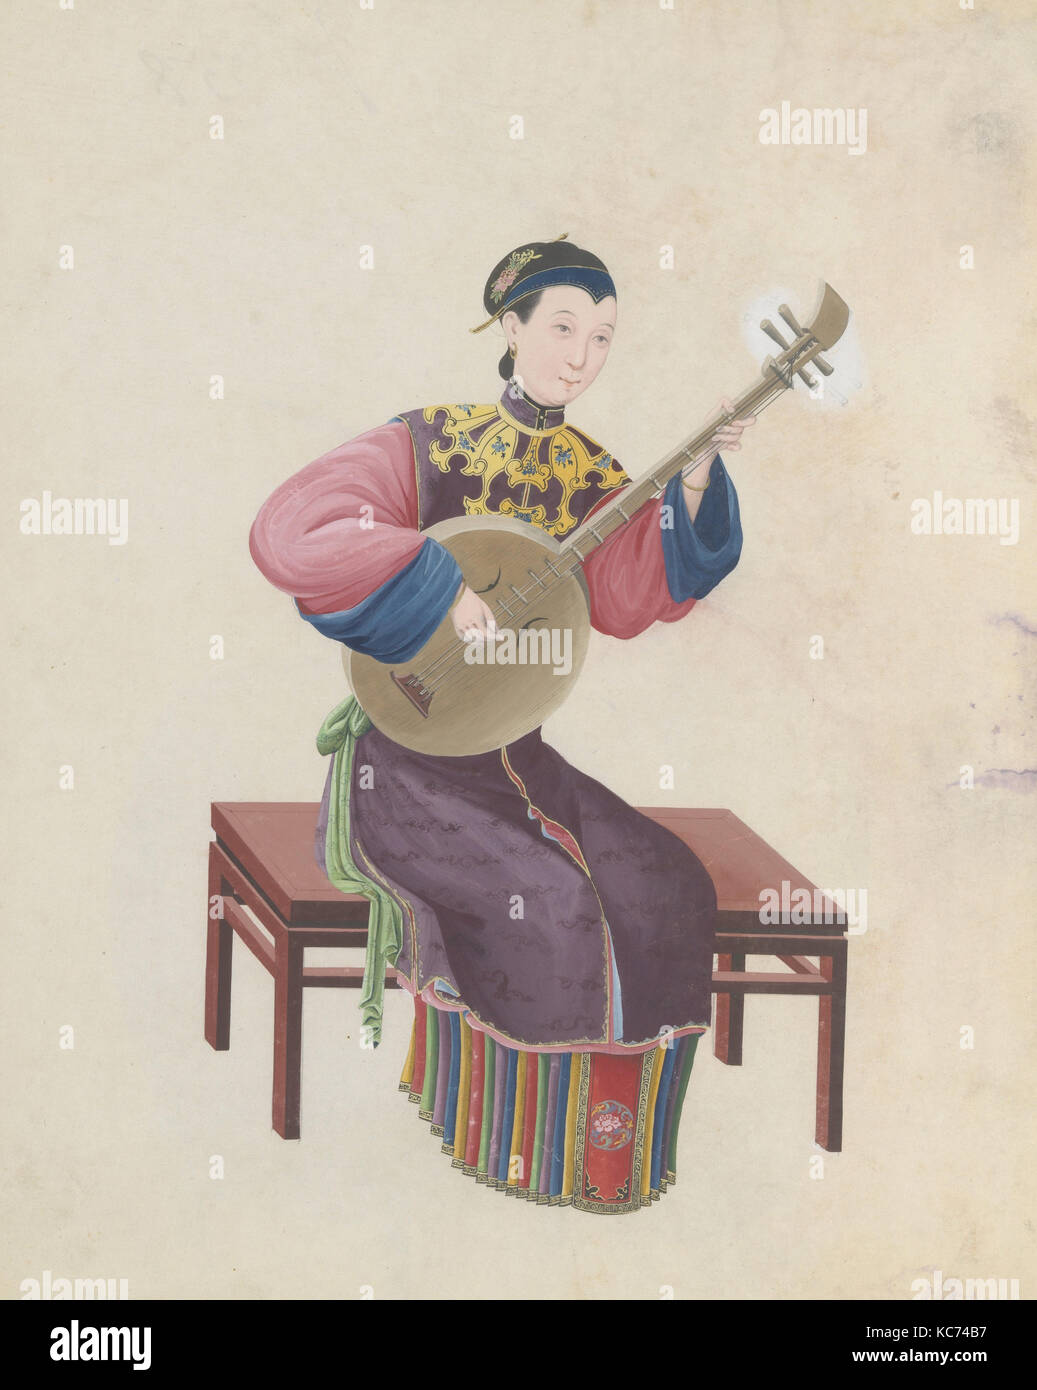 Aquarelle de musicien jouant ruan( ?), fin du 18e siècle Banque D'Images